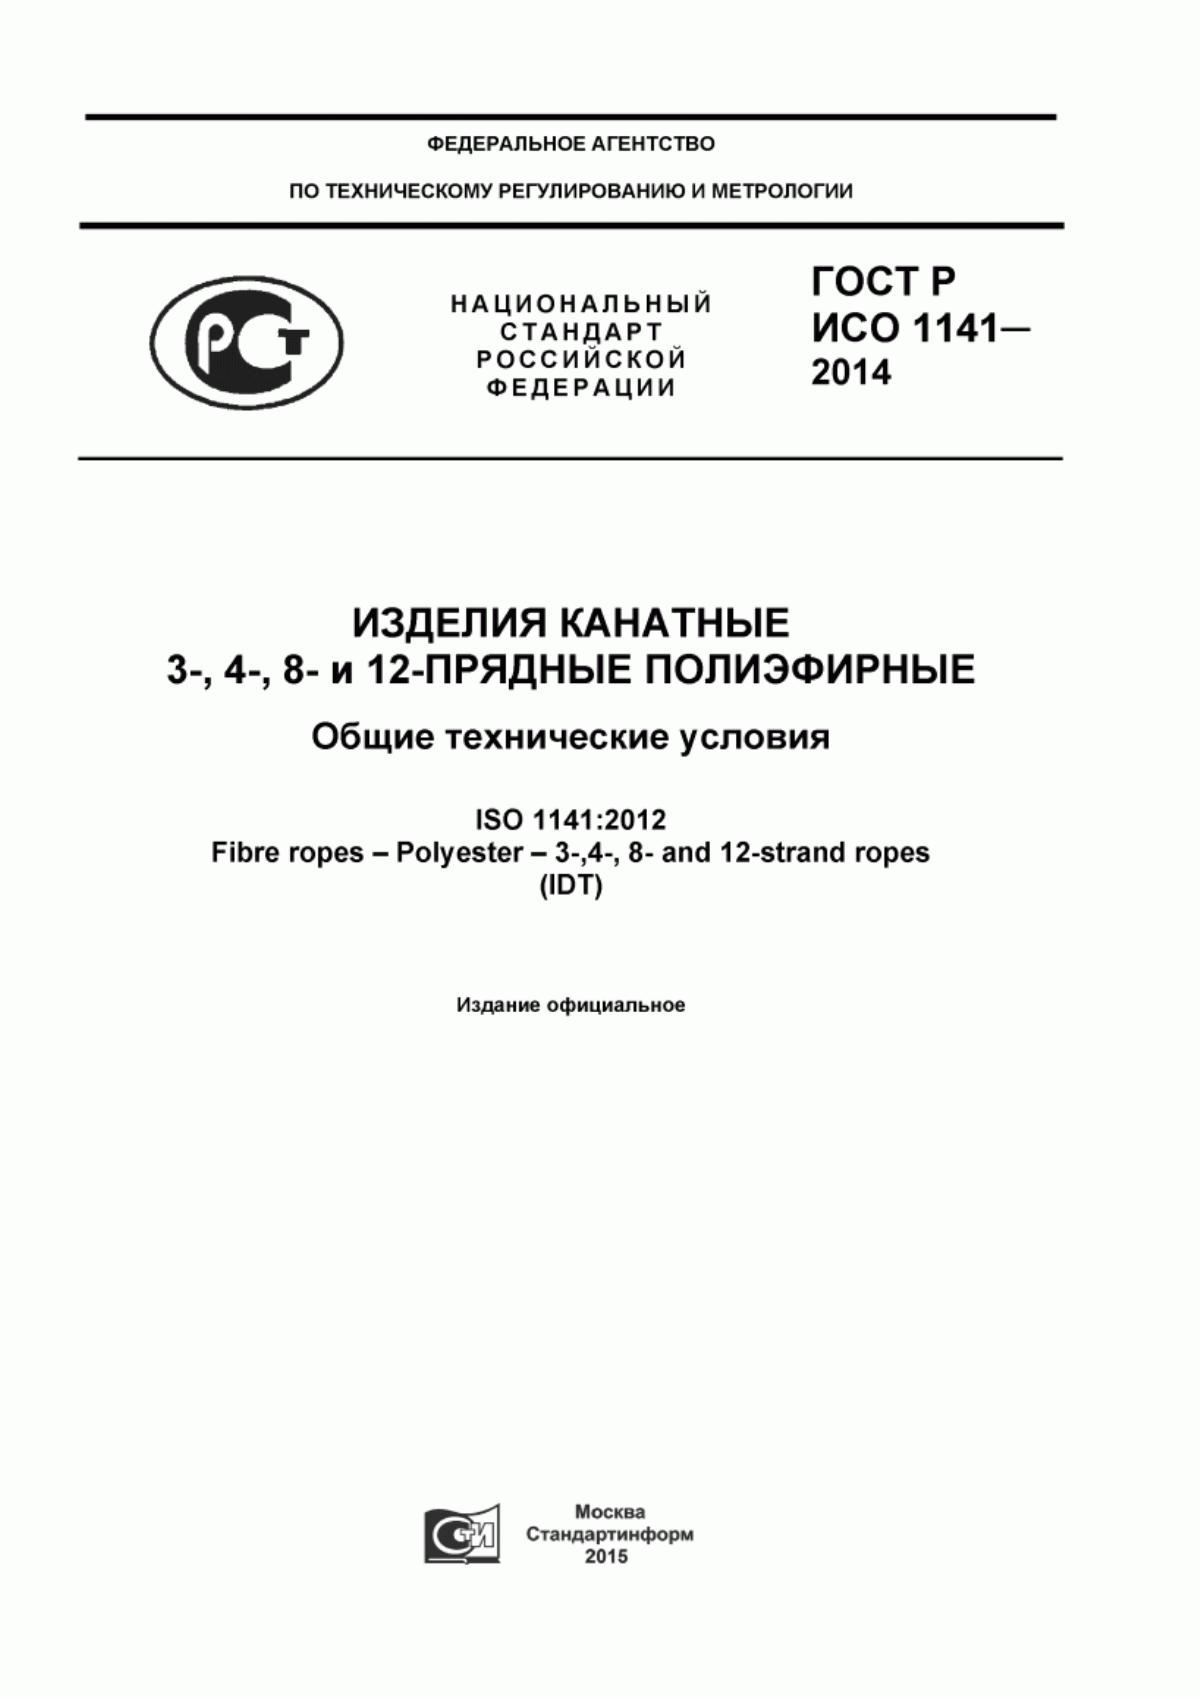 ГОСТ Р ИСО 1141-2014 Изделия канатные 3-,4-,8- и 12-прядные полиэфирные. Общие технические условия